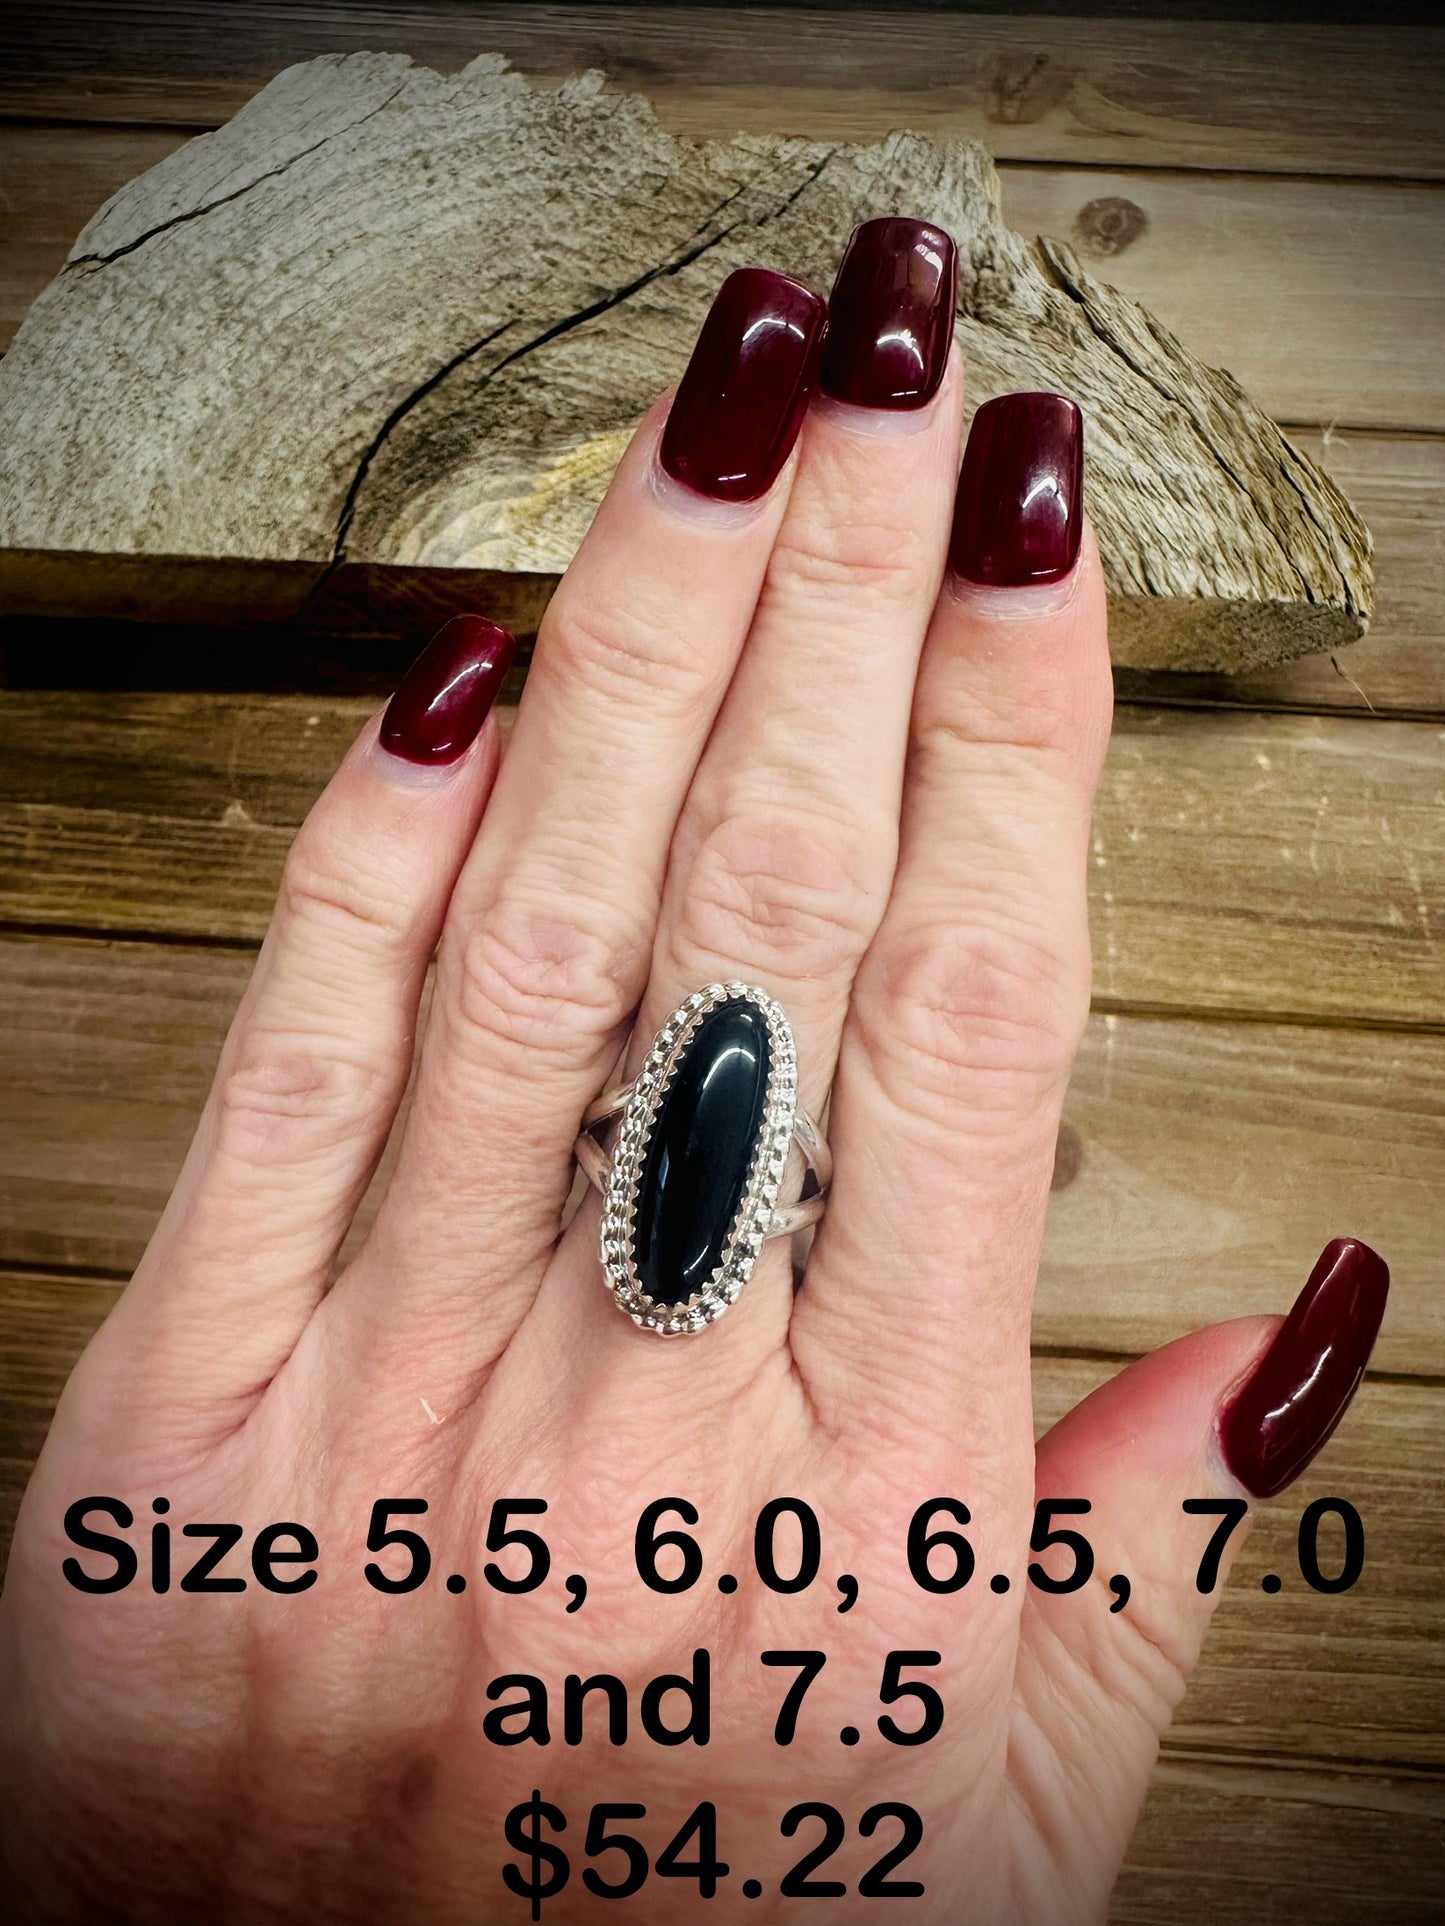 Black Onyx Sizes 5.5, 6.0, 6.5, 7.0 and 7.5